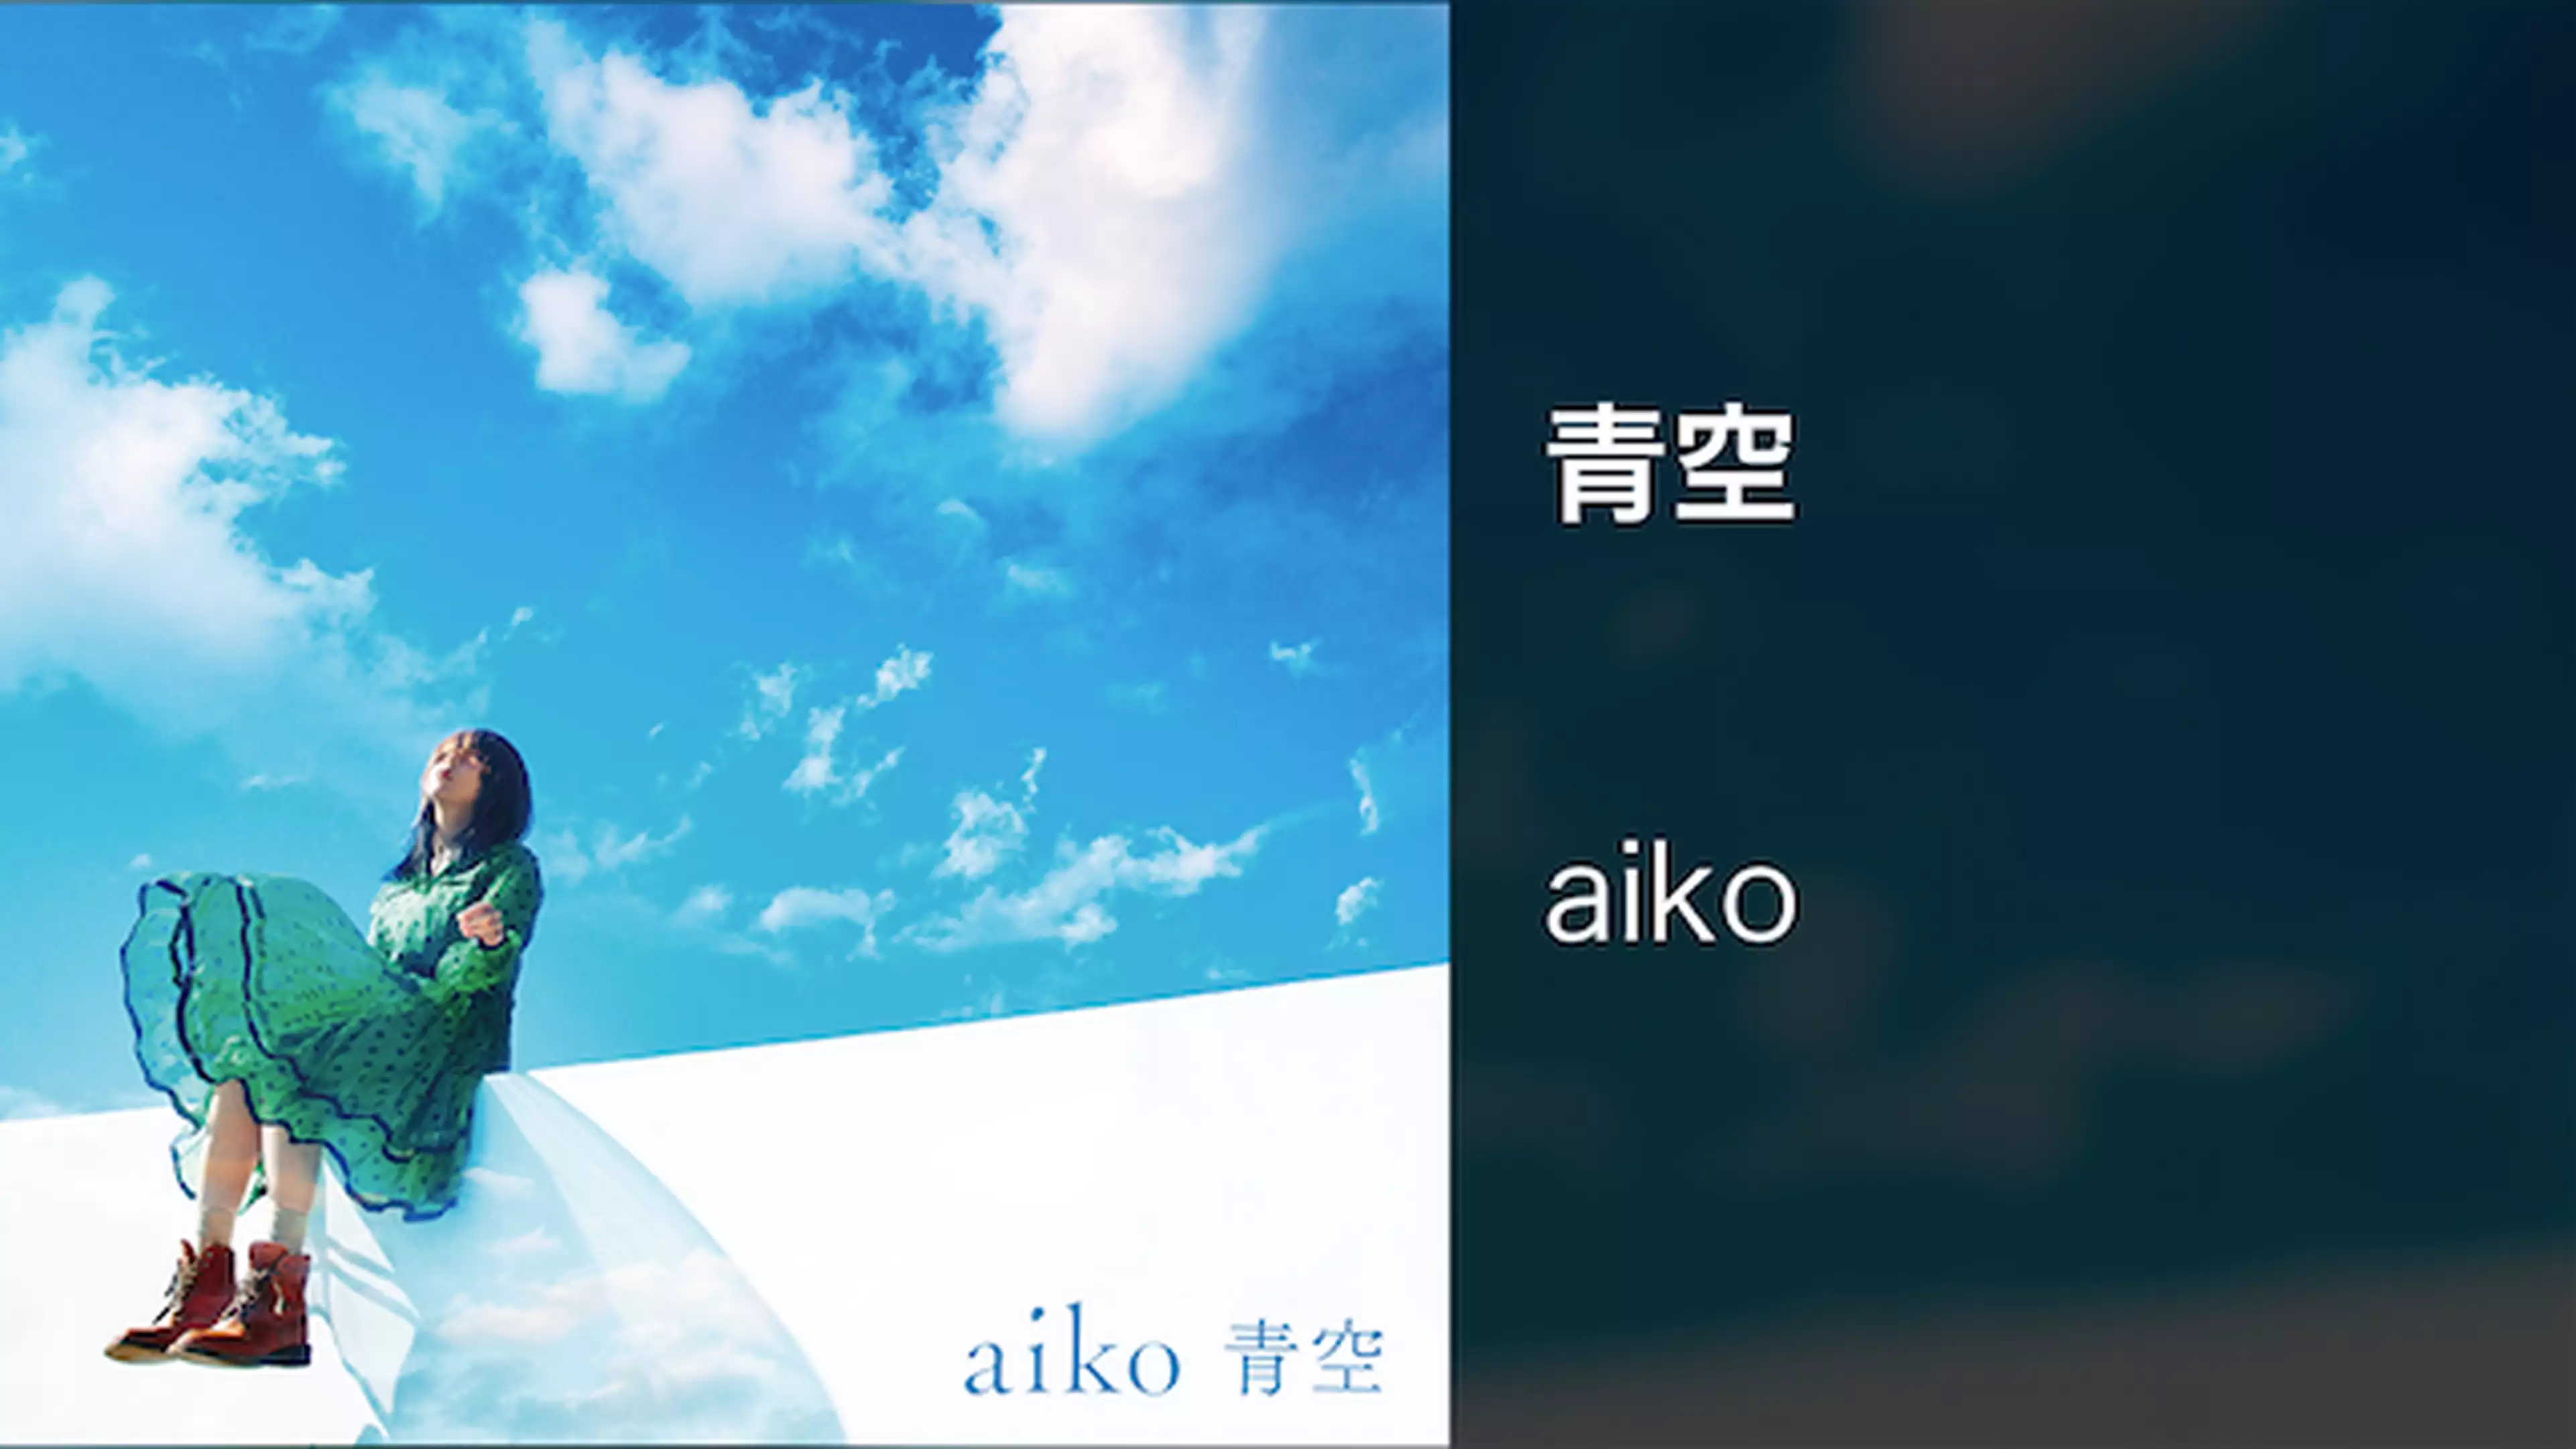 Aiko 愛され続けるシンガーソングライター